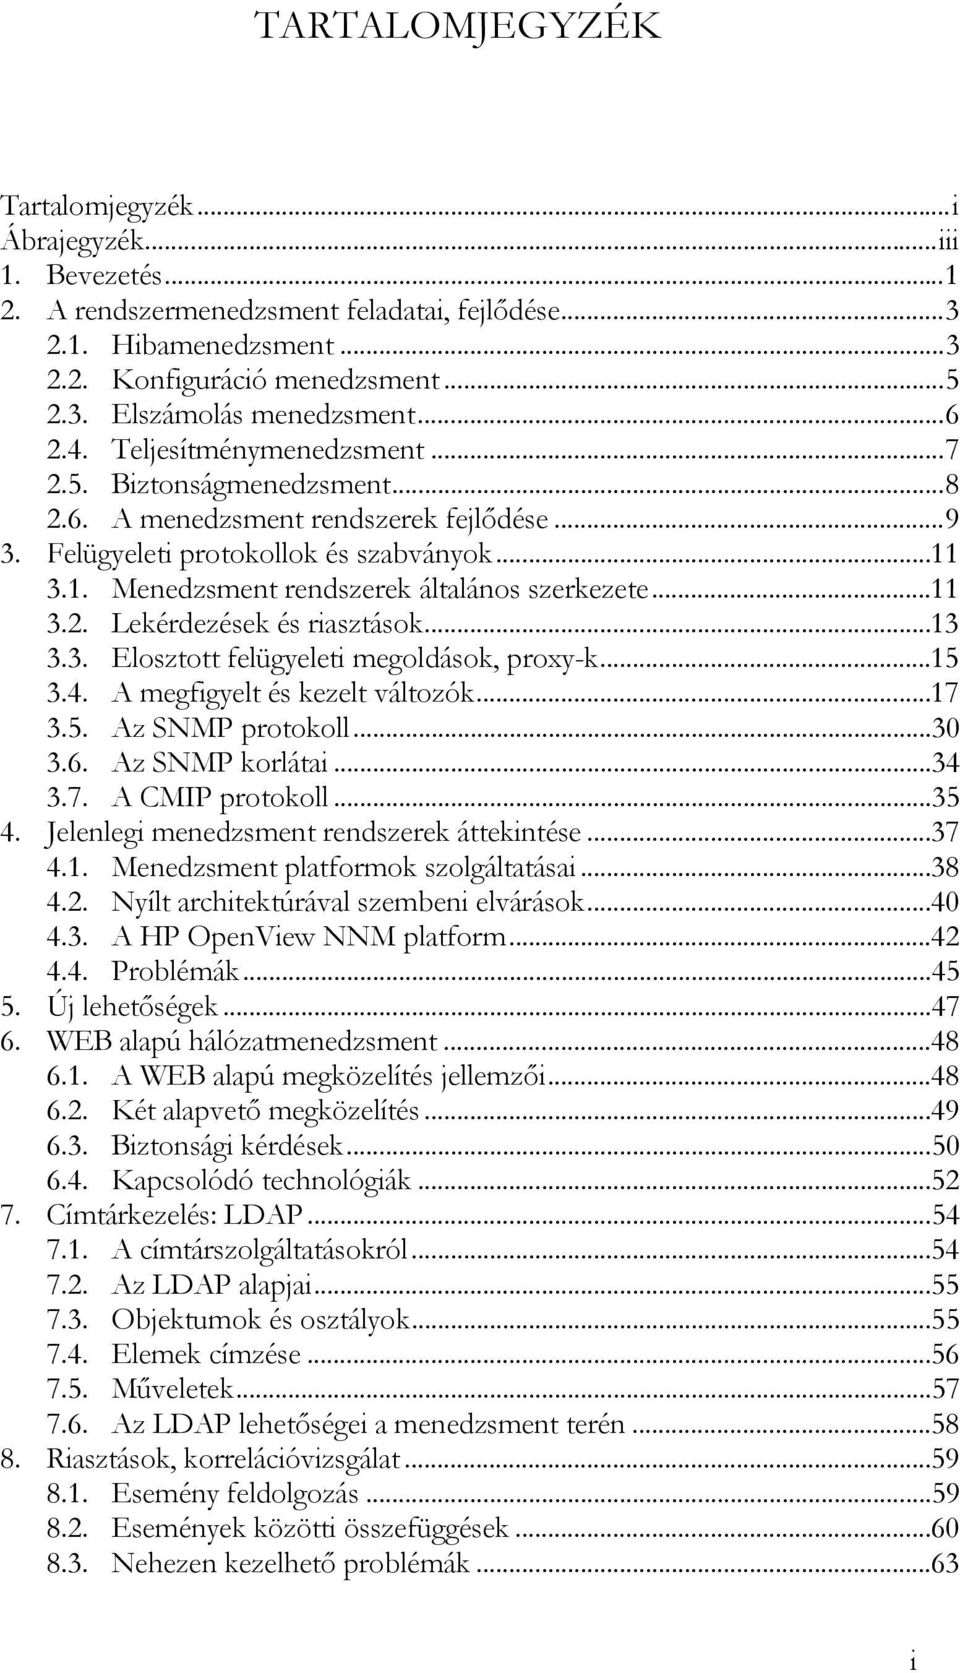 3.1. Menedzsment rendszerek általános szerkezete...11 3.2. Lekérdezések és riasztások...13 3.3. Elosztott felügyeleti megoldások, proxy-k...15 3.4. A megfigyelt és kezelt változók...17 3.5. Az SNMP protokoll.